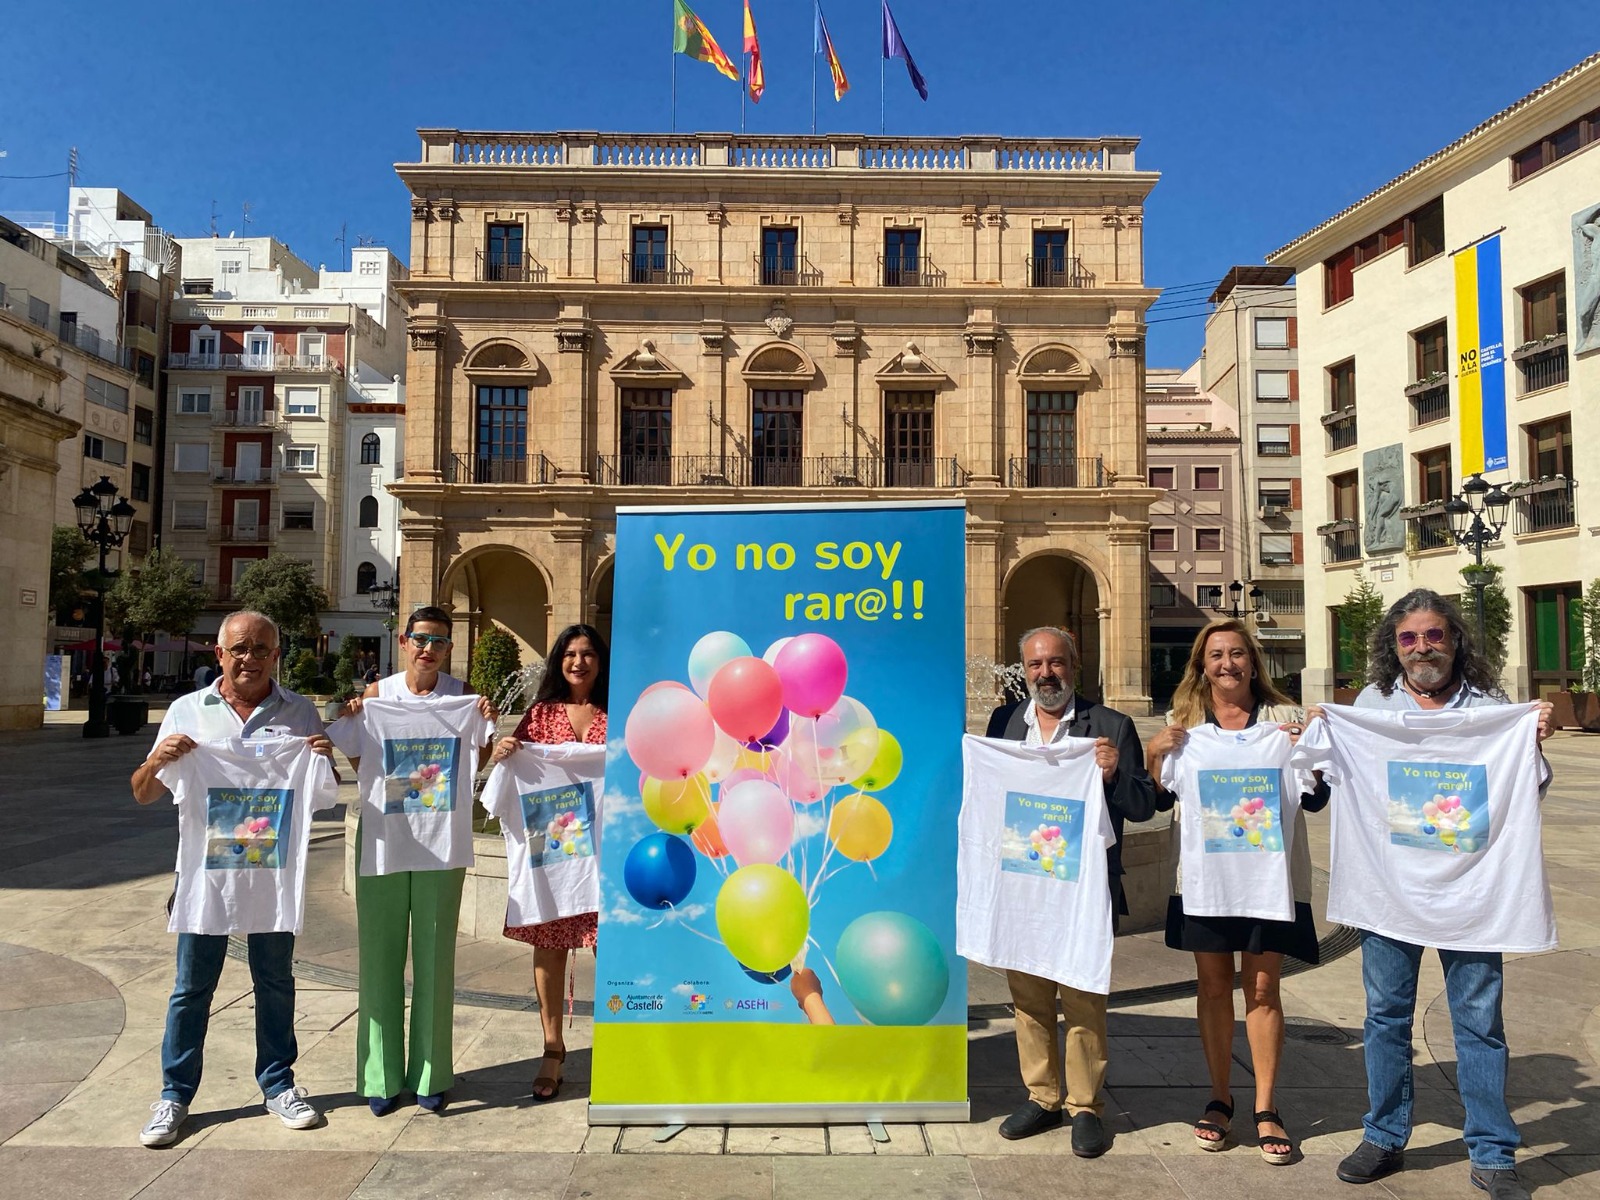 El Ayuntamiento de Castellón organiza un concierto gratuito del grupo Kasparov para dar visibilidad a las enfermedades raras